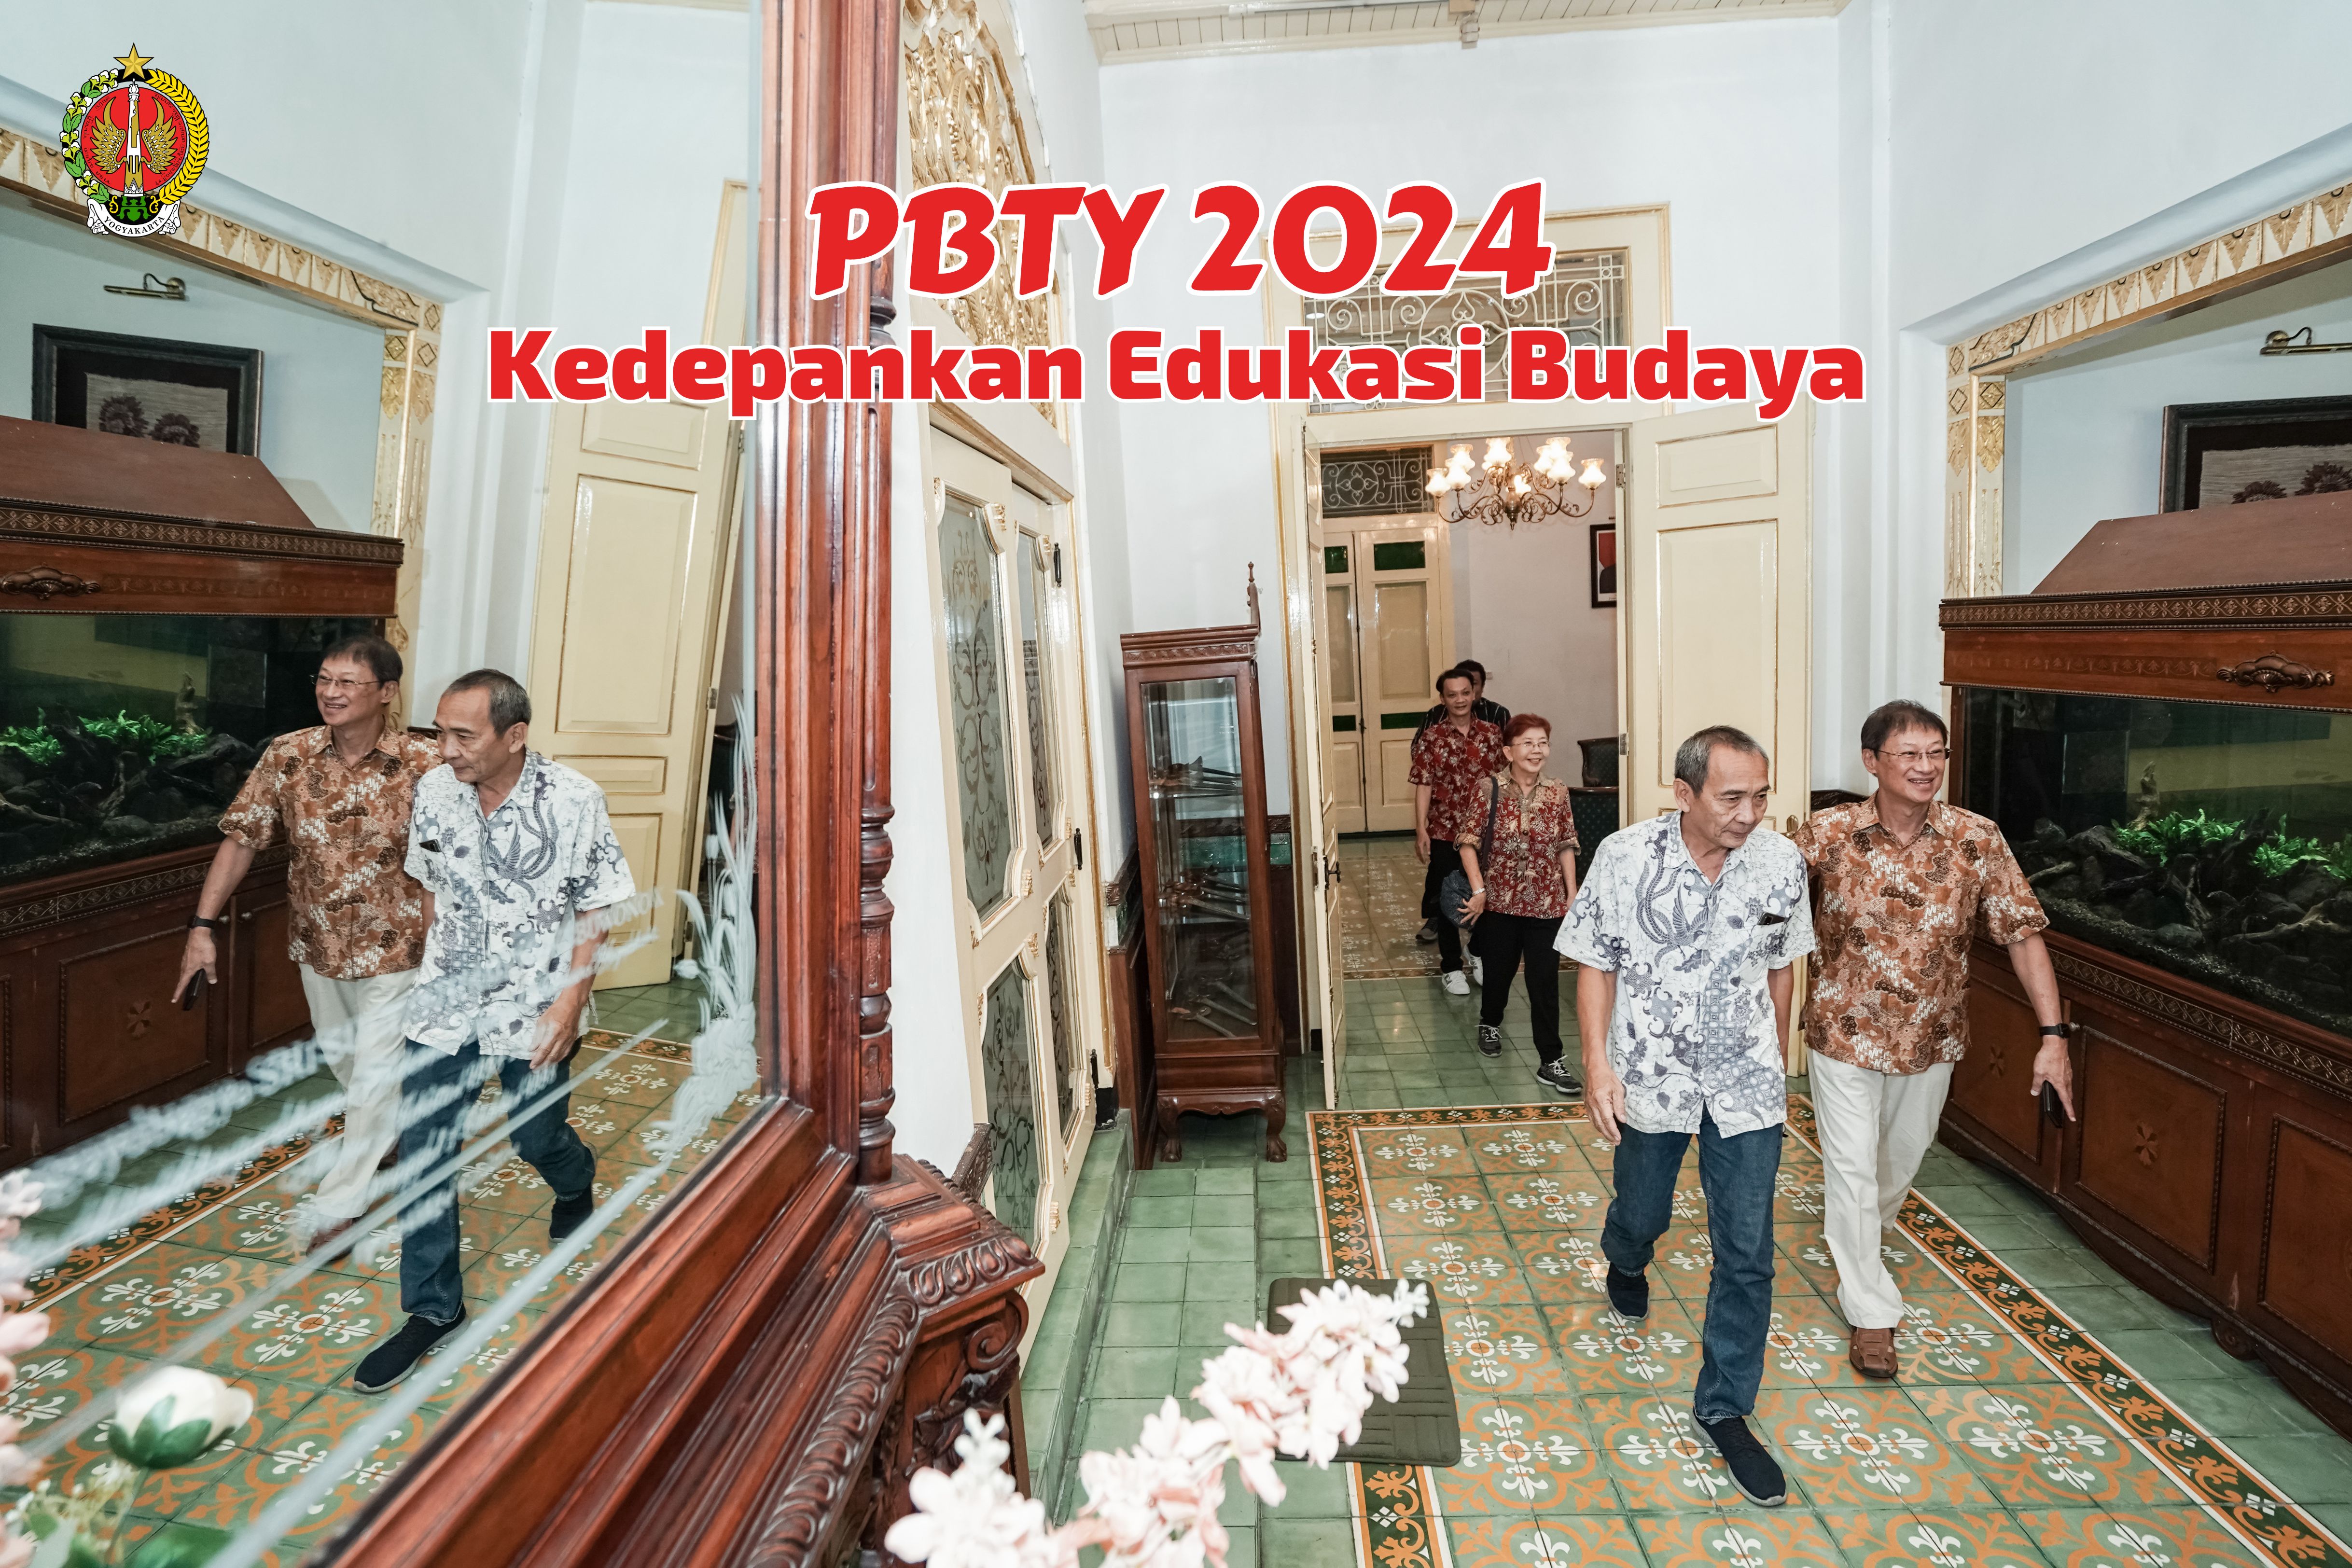 PBTY 2024 Kedepankan Edukasi Budaya